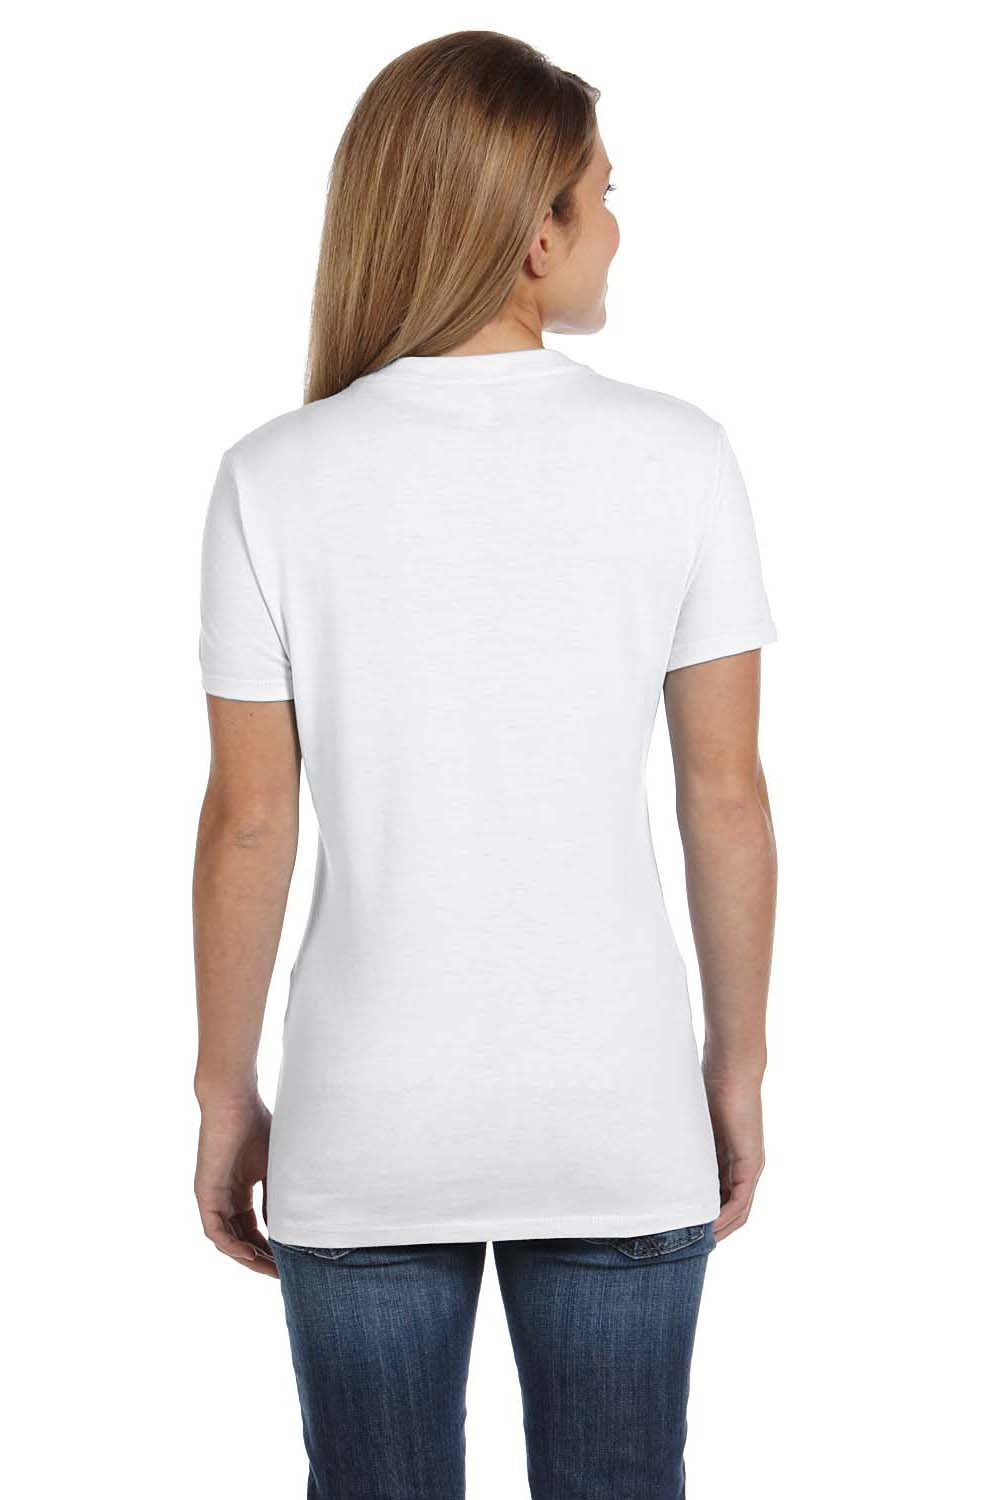 Hanes S04V Womens Nano-T Short Sleeve V-Neck T-Shirt White Back